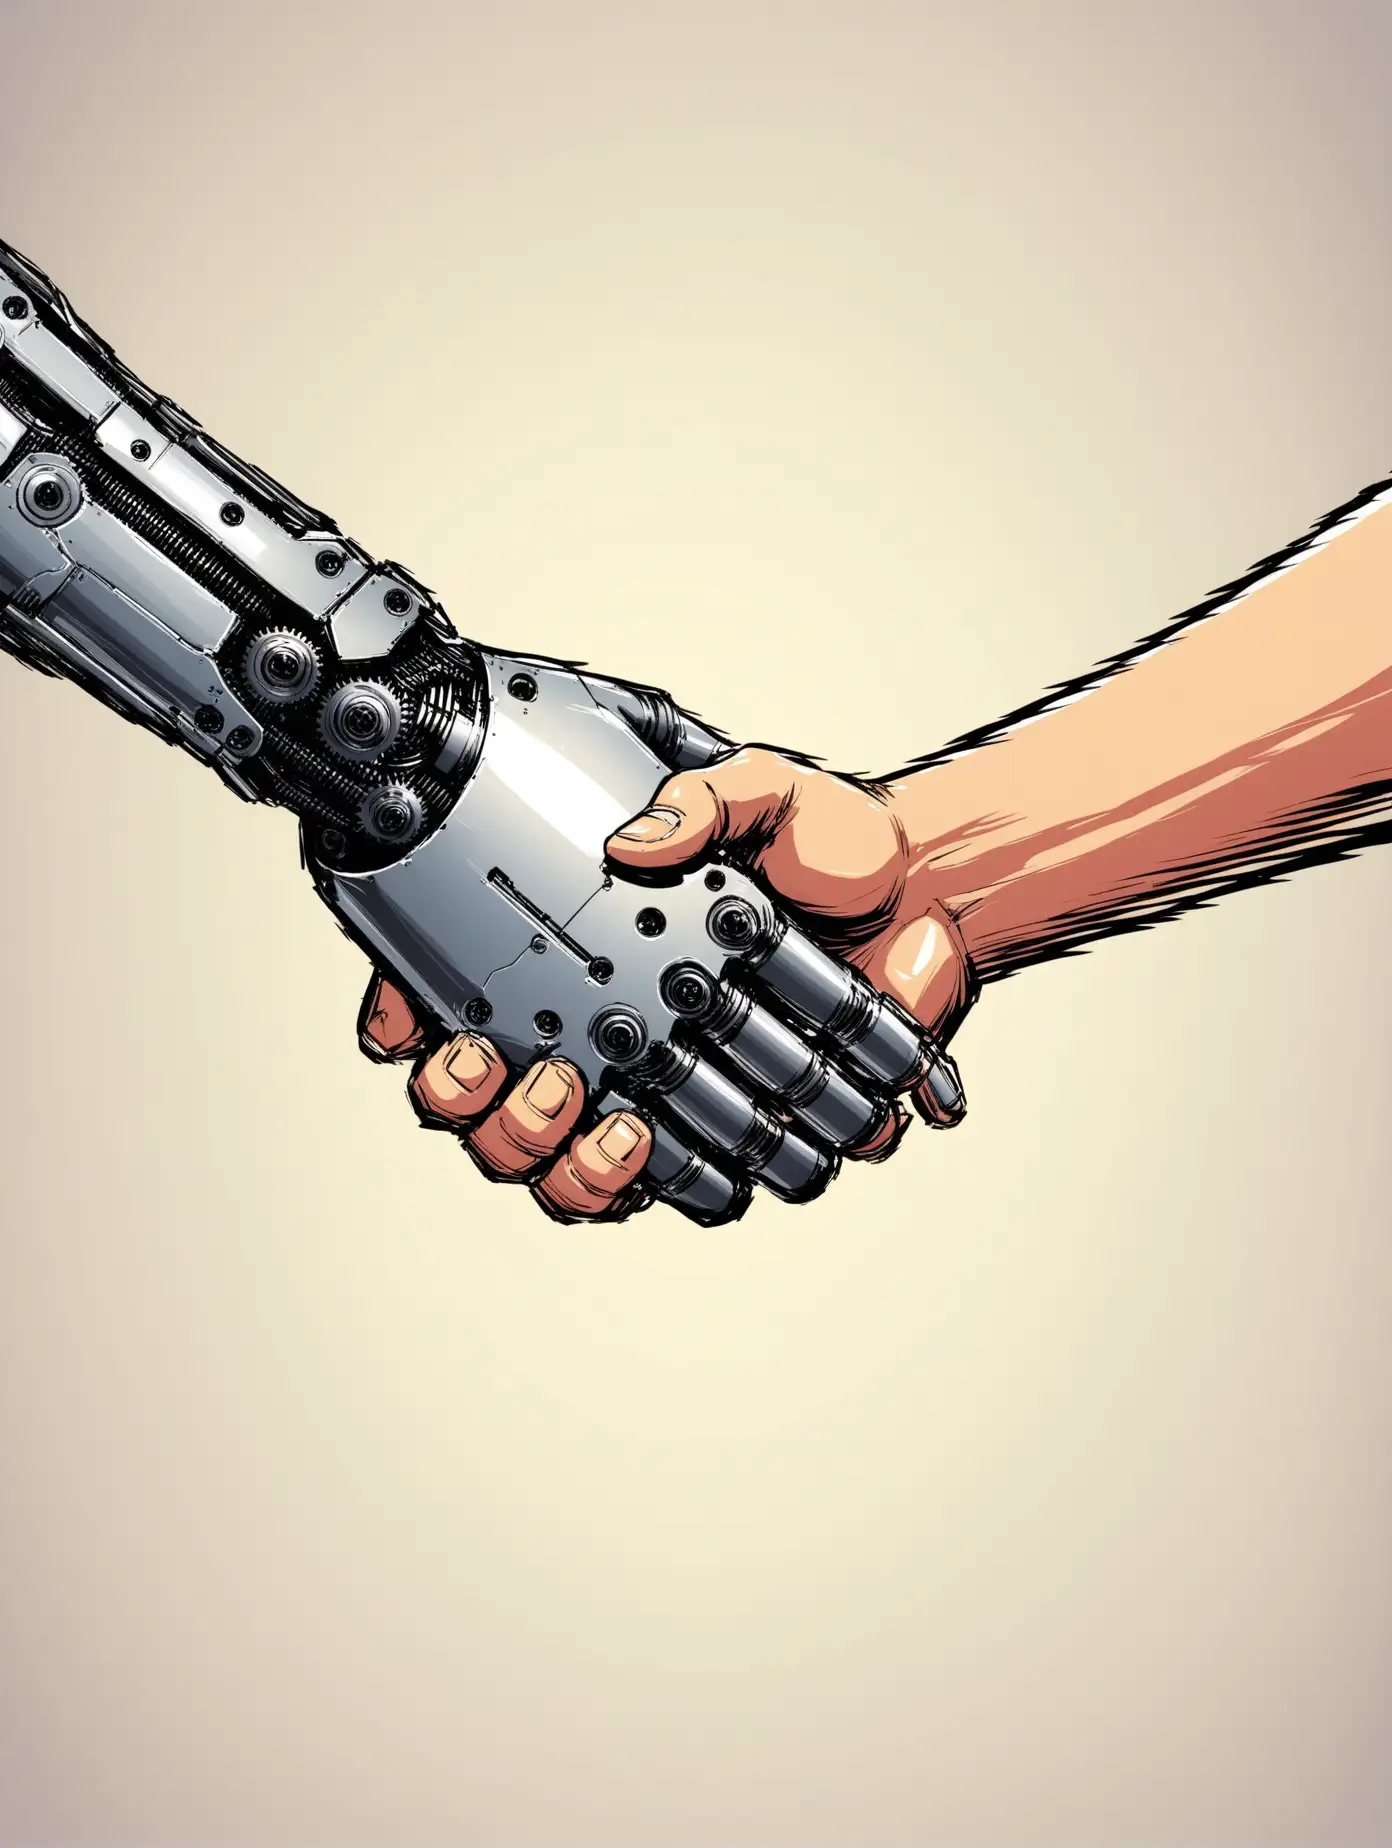 Man hand and machine hand shake hands